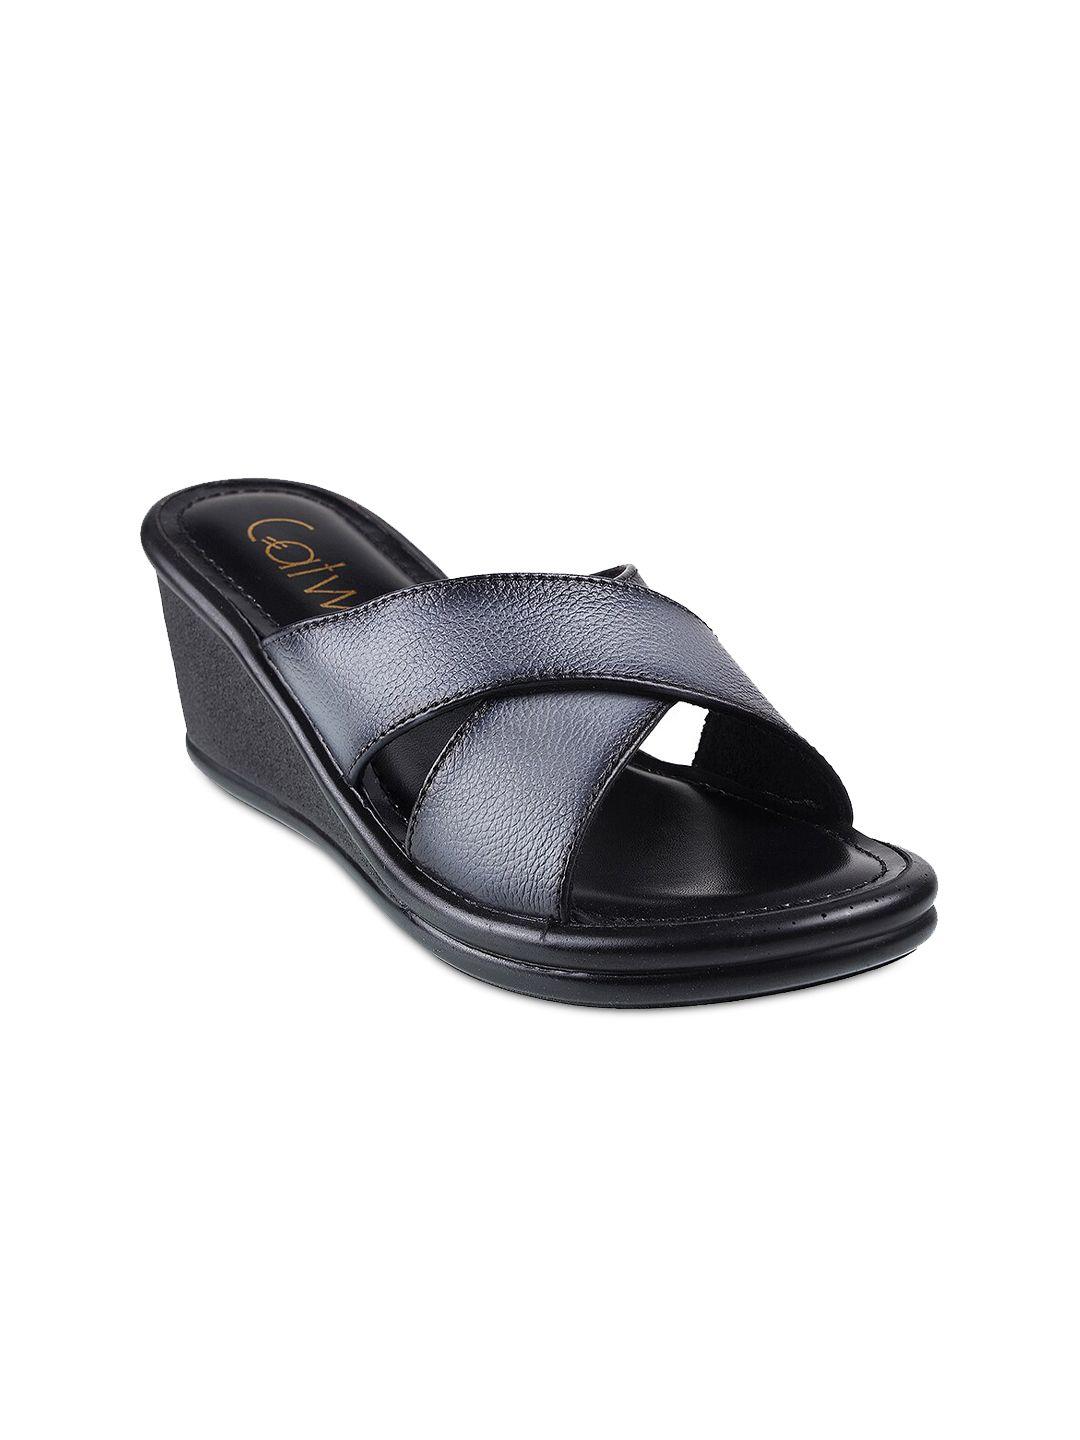 catwalk grey textured wedge heels